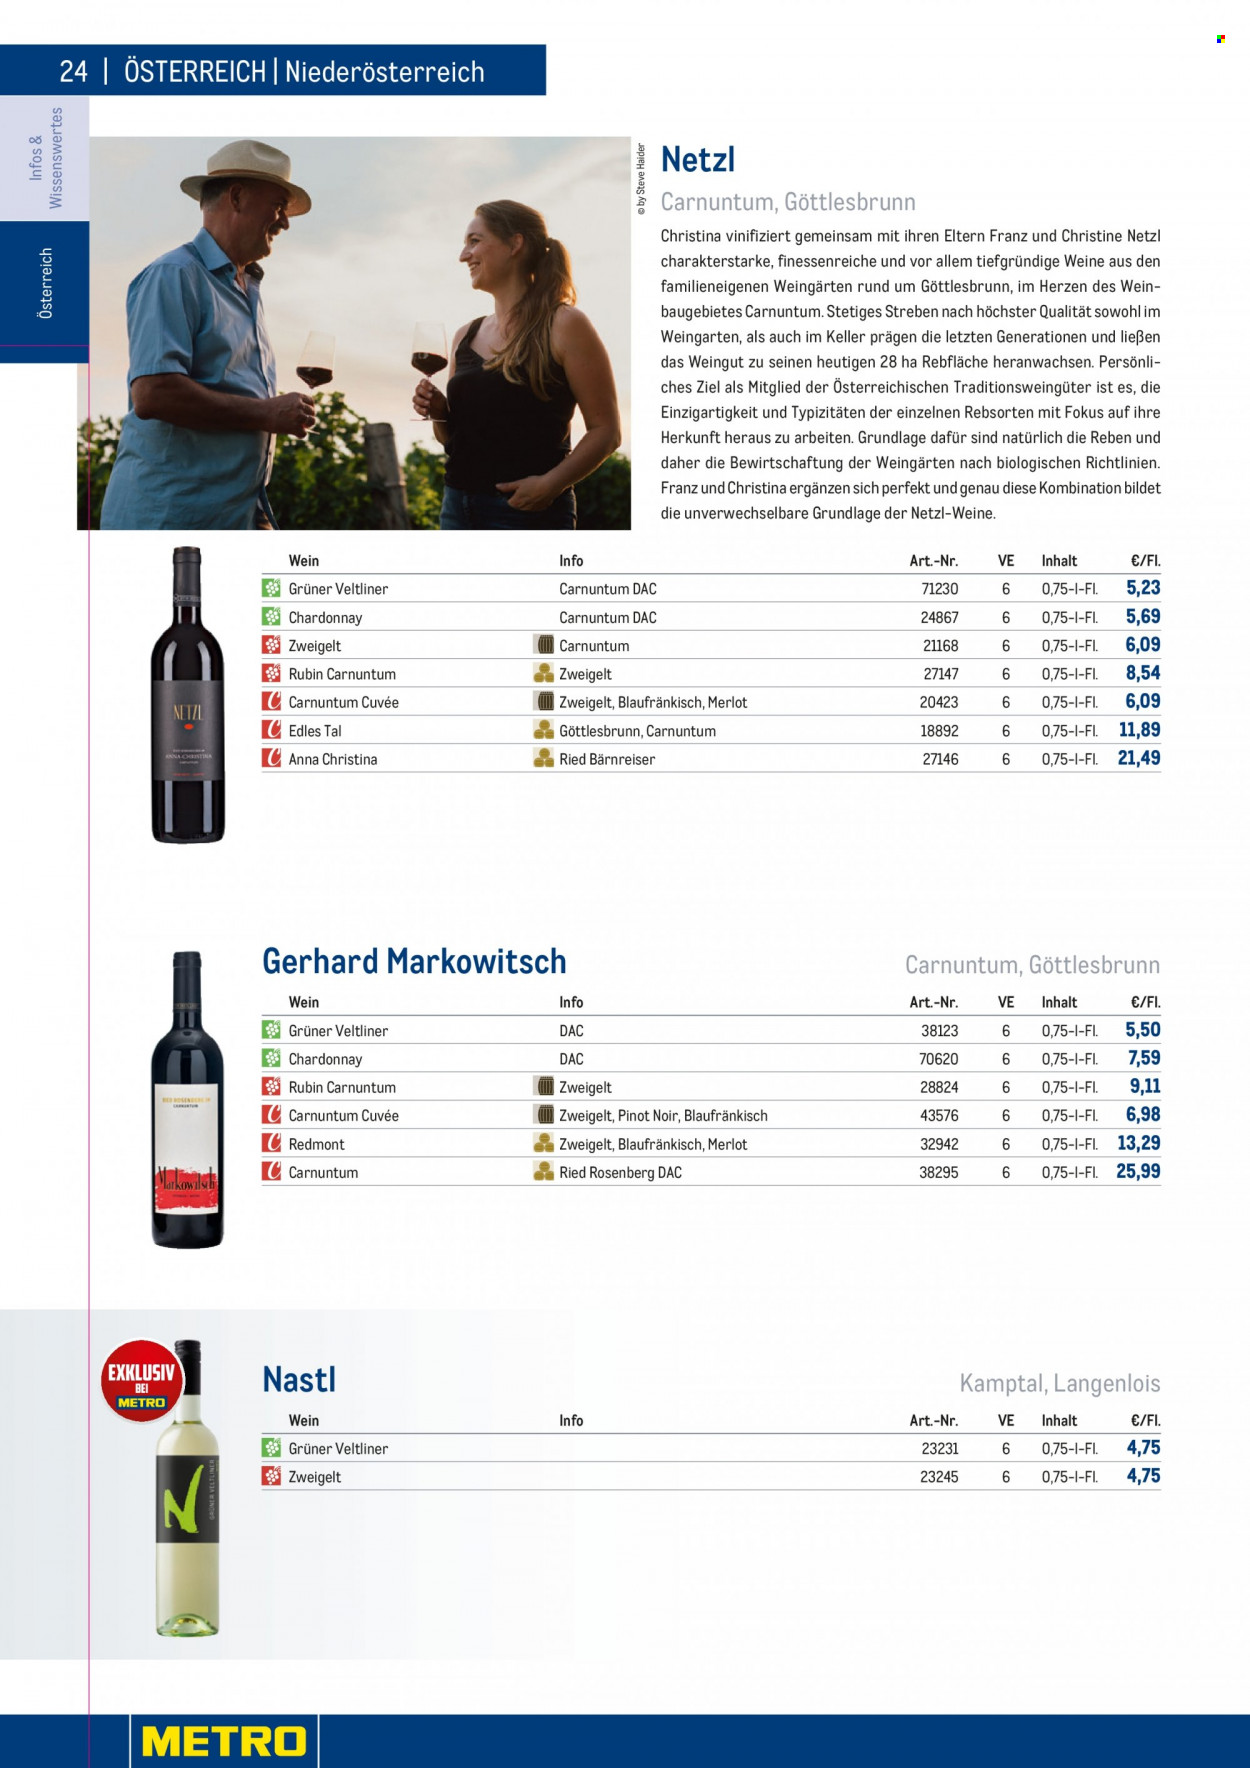 Angebote Metro - 7.9.2022 - 30.4.2023 - Verkaufsprodukte - Wein, Spätburgunder, Merlot, Chardonnay, Weißwein, Zweigelt, Grüner Veltliner, Alkohol, Pinot Noir, Rubin. Seite 24.